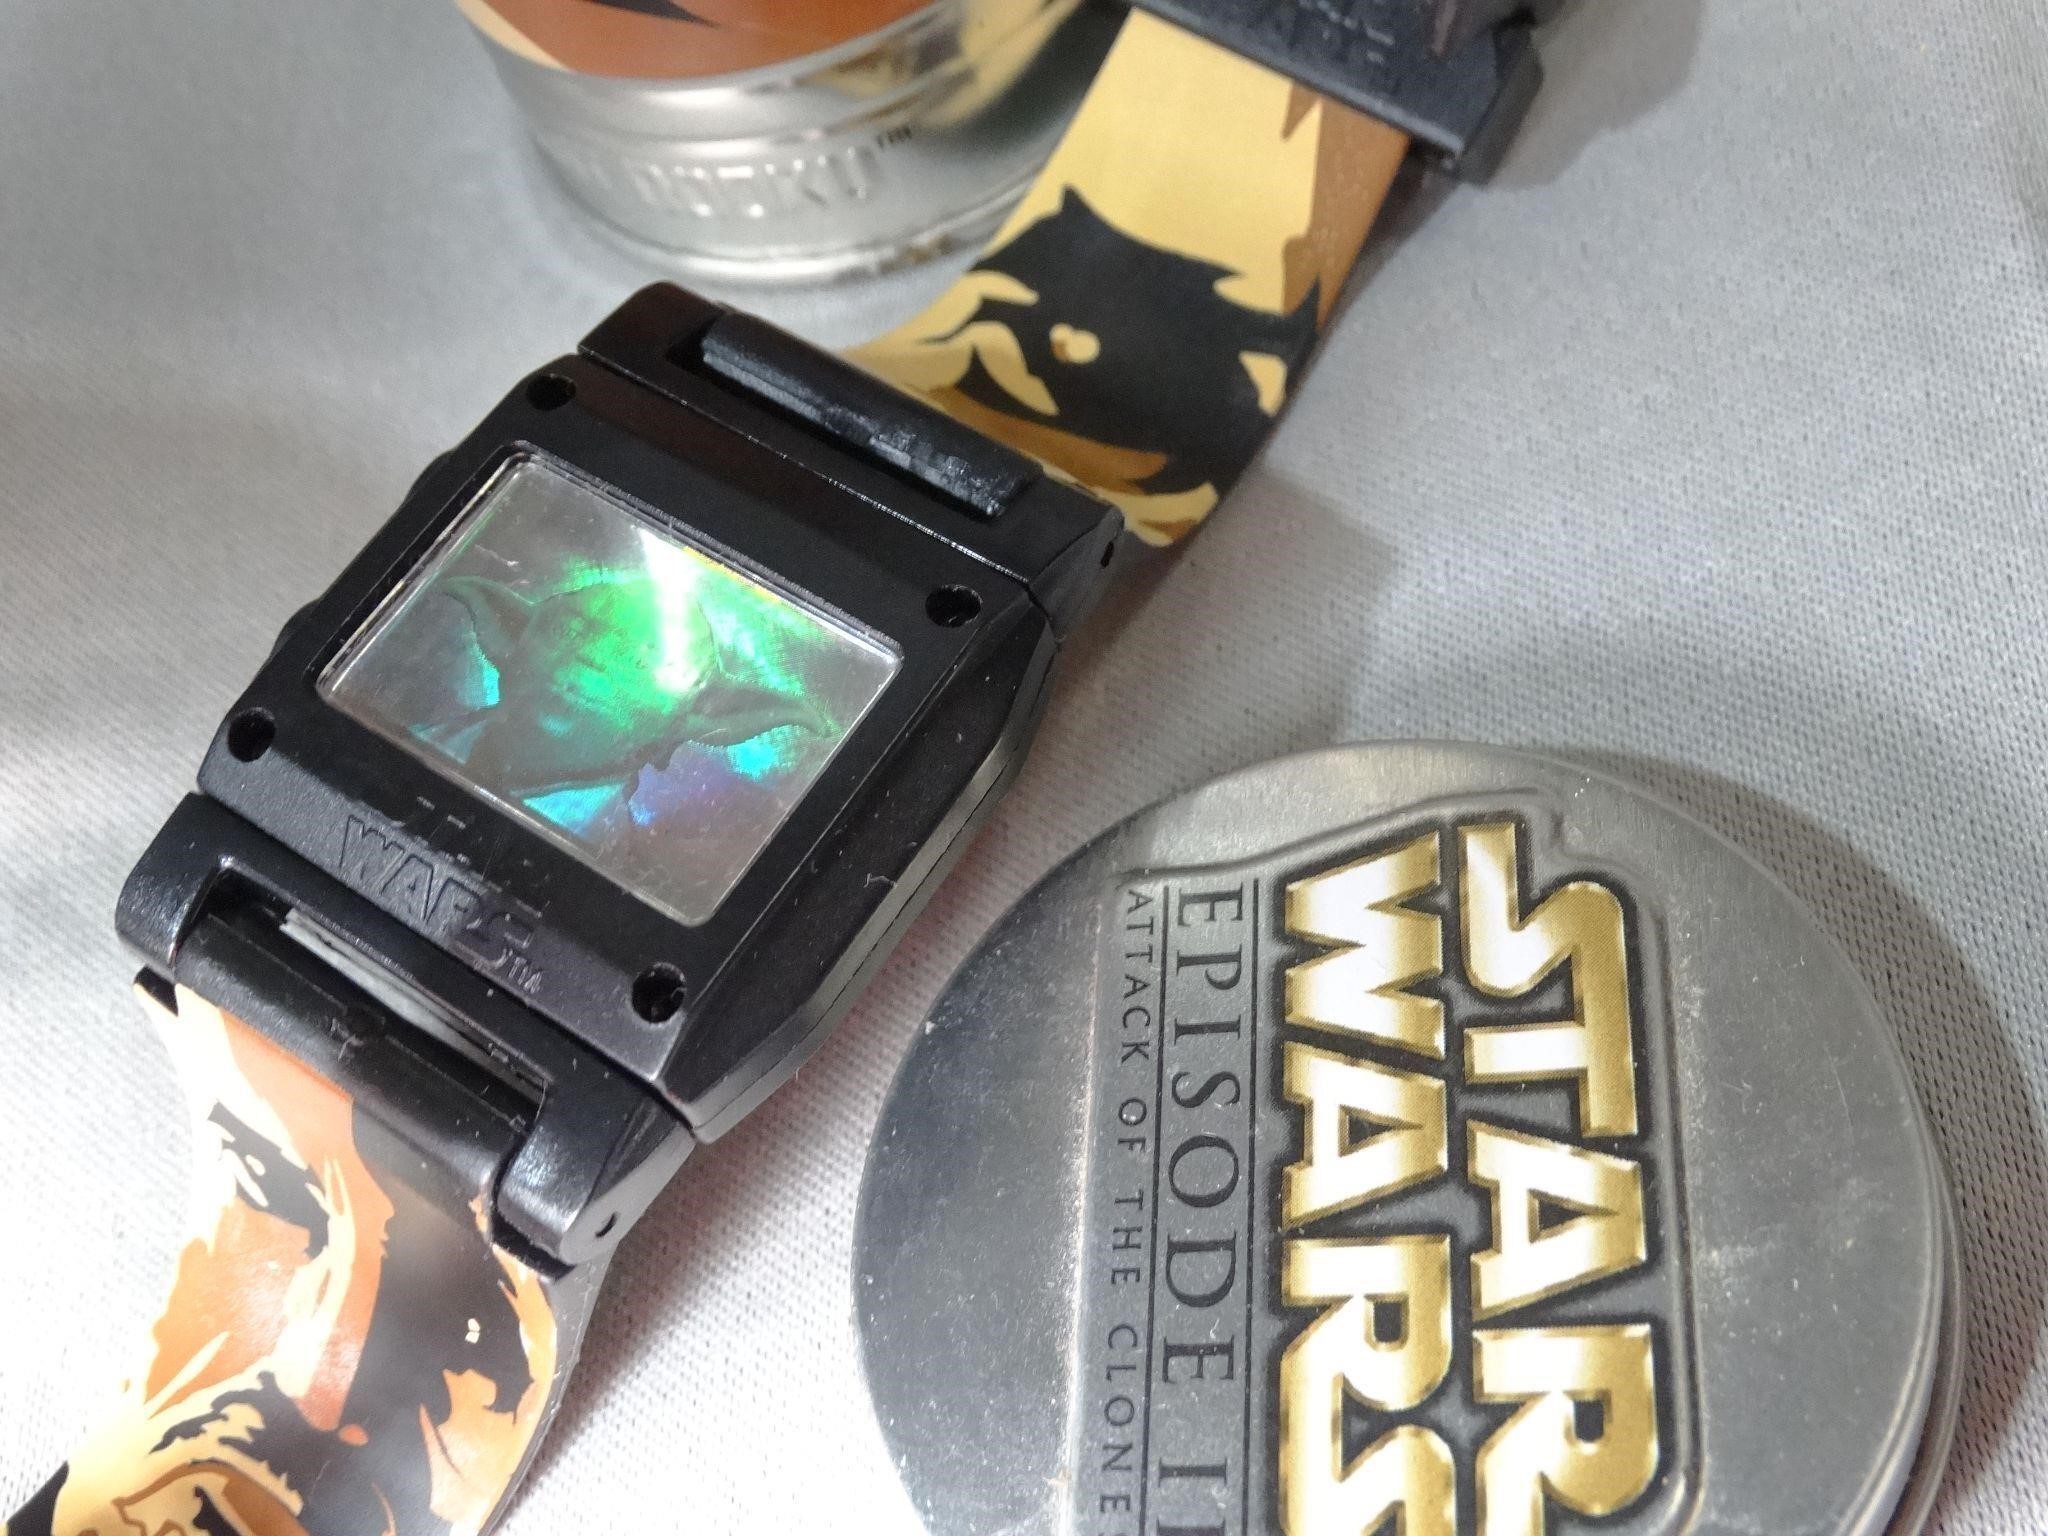 Star Wars Yoda Watch in Tin